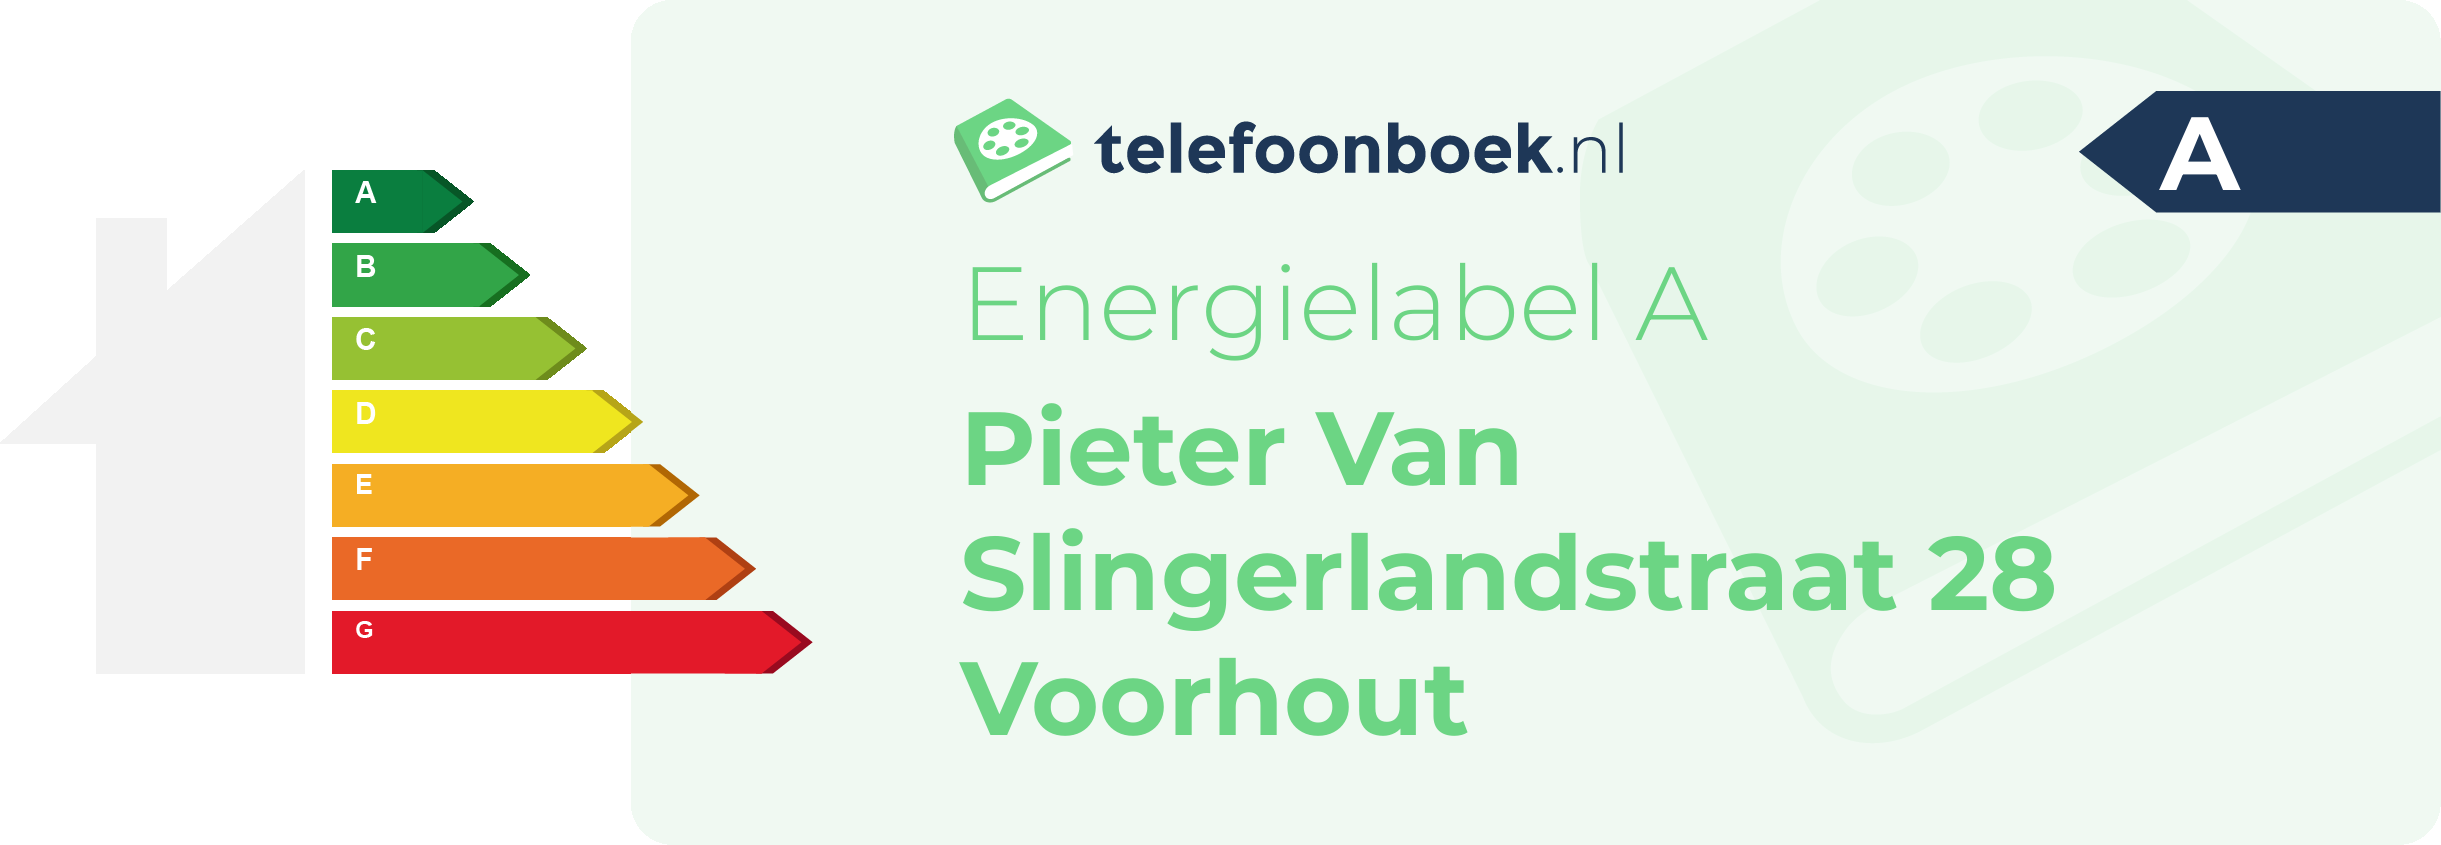 Energielabel Pieter Van Slingerlandstraat 28 Voorhout